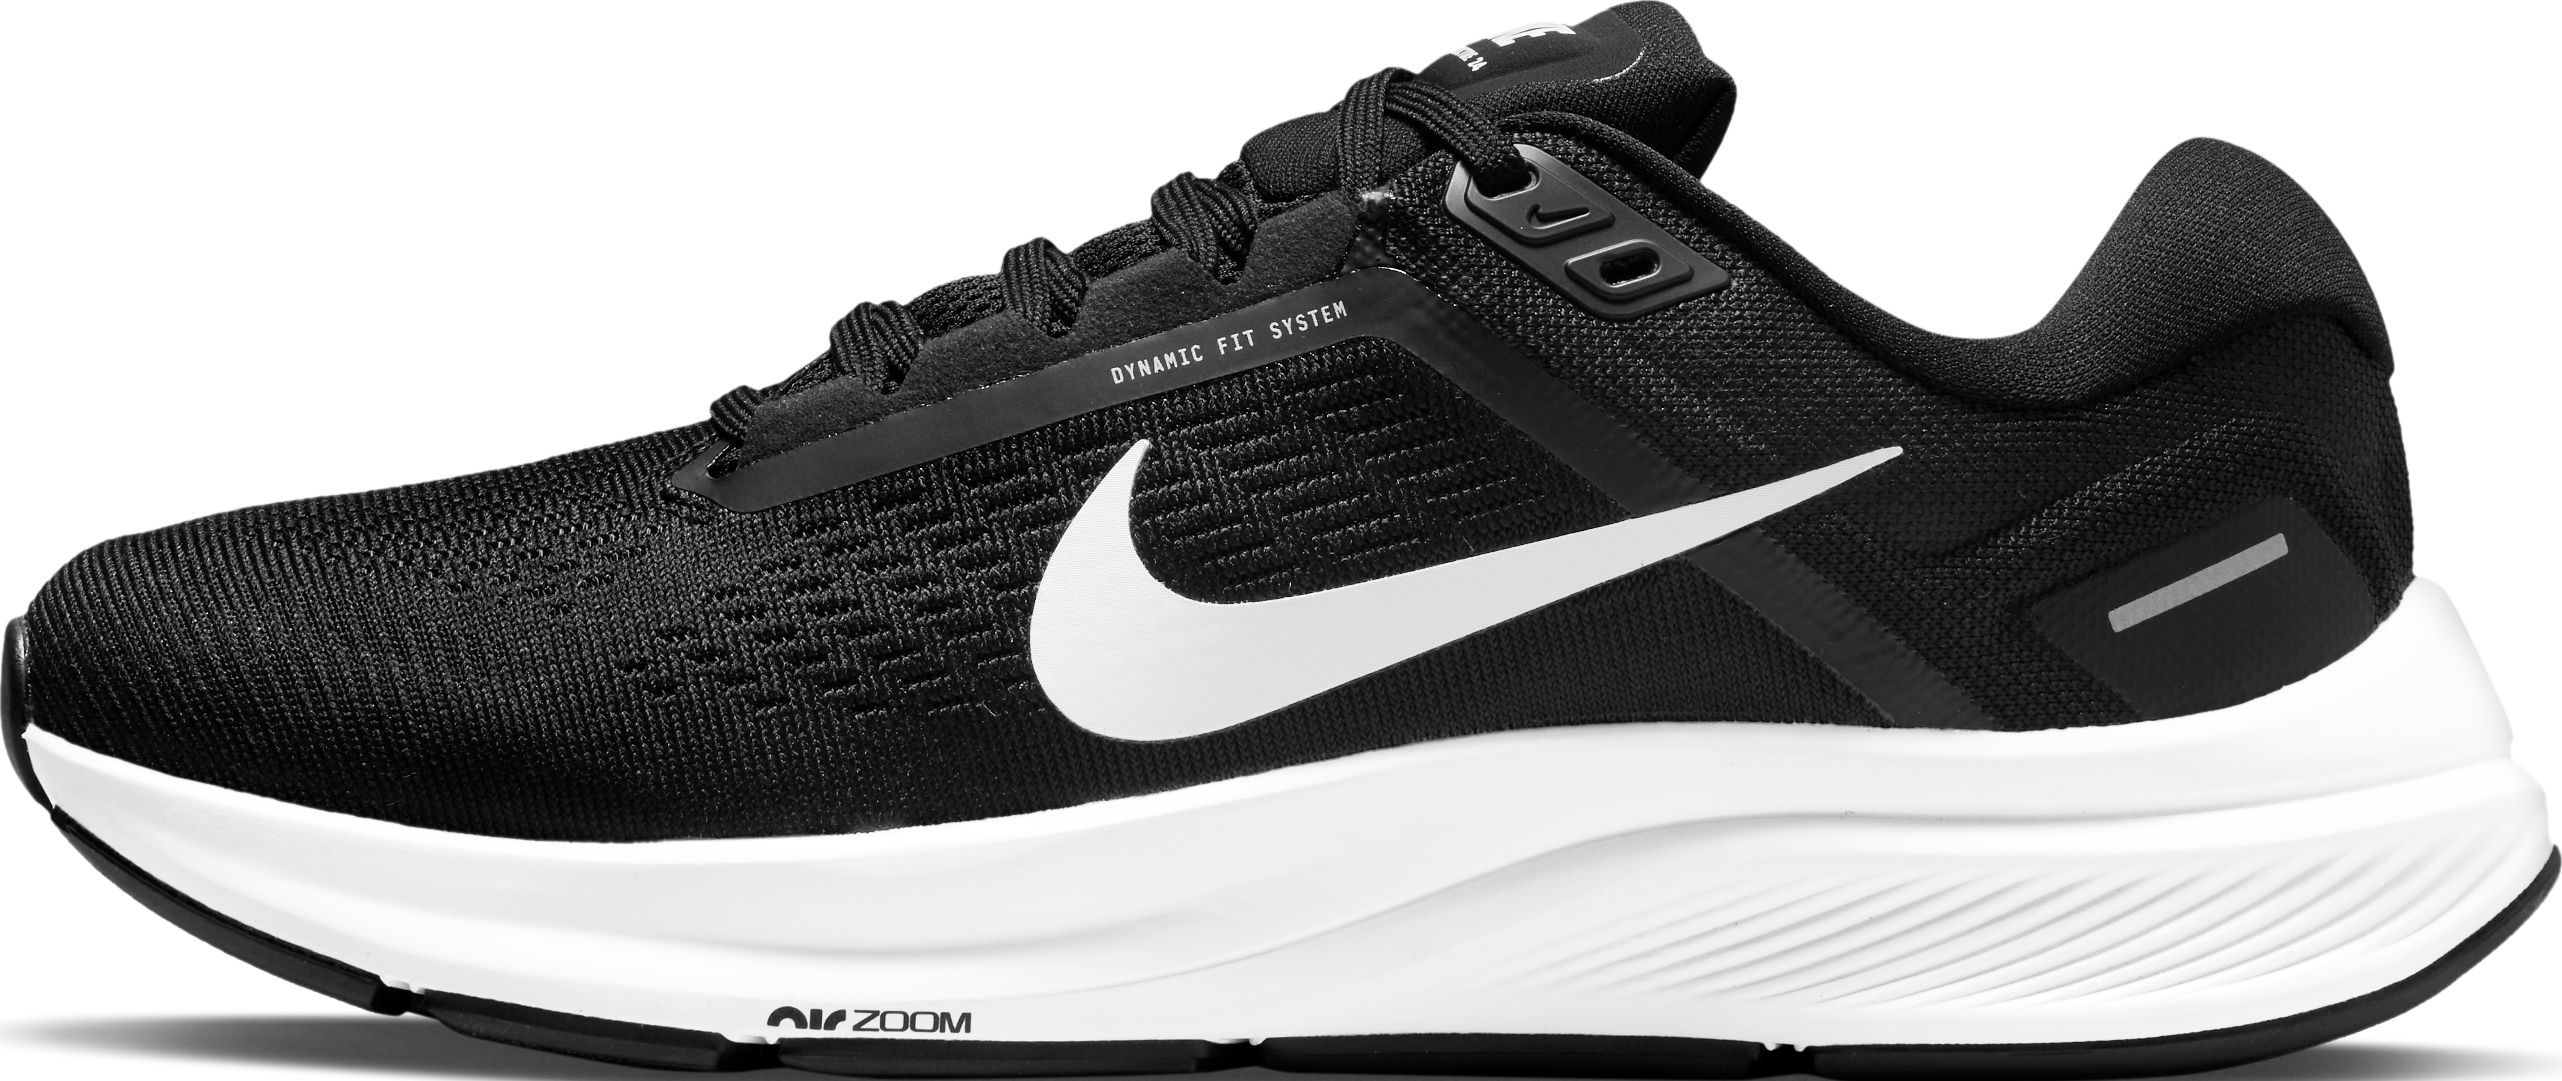 Descarte el centro comercial El cielo Nike W Nike Air Zoom Structure 24 Tenis negro de mujer para correr  Referencia : DA8570-001 - prochampions